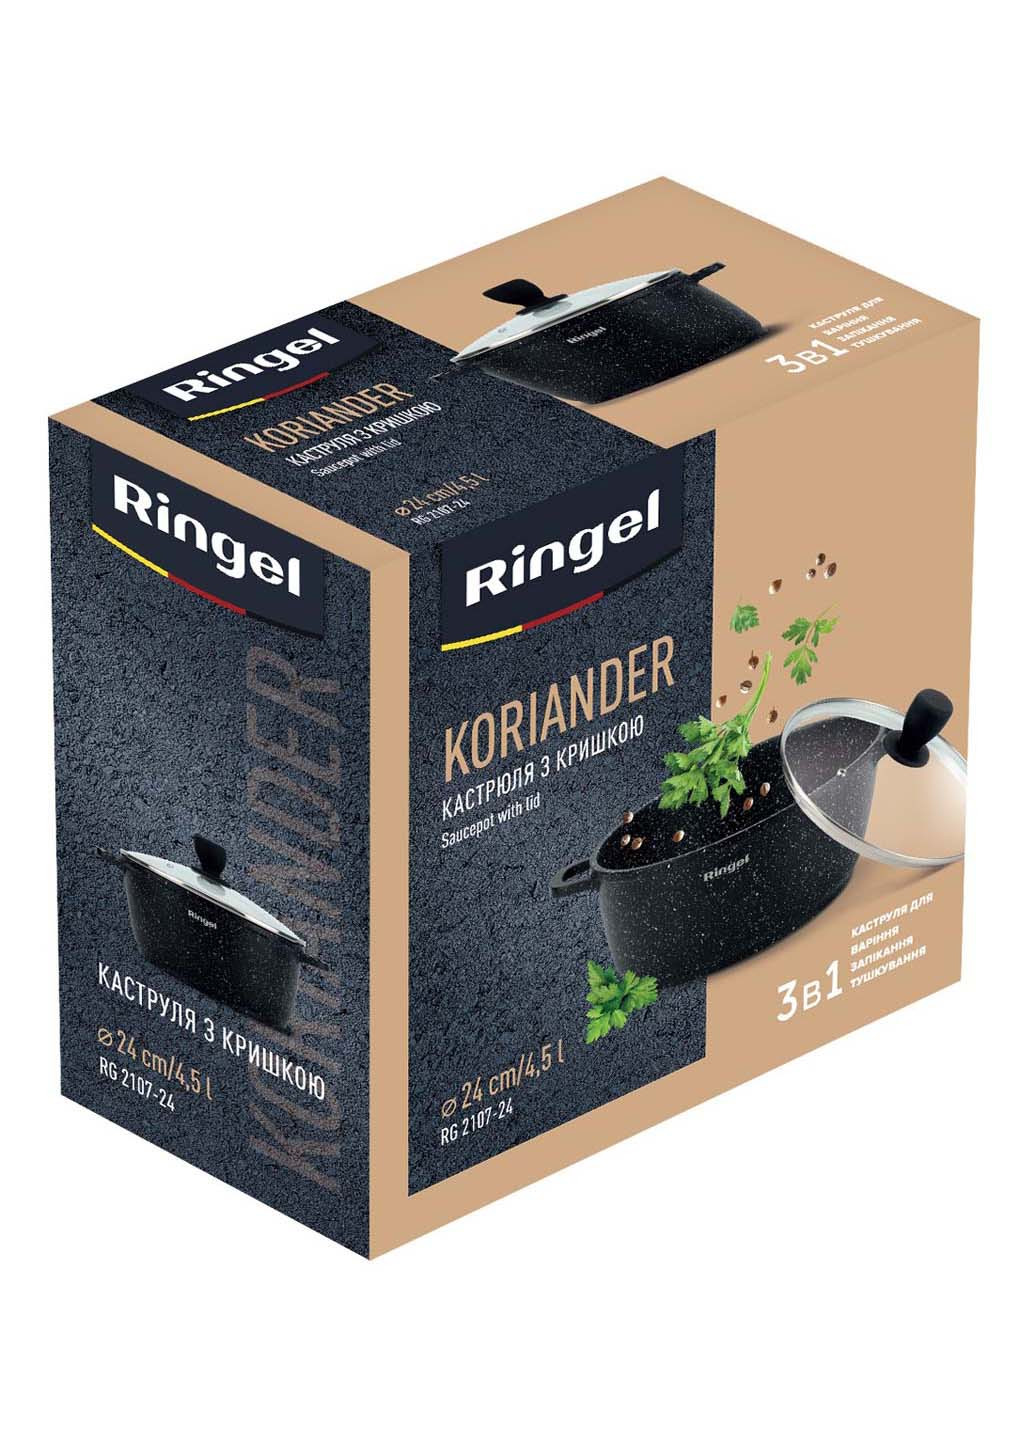 Кастрюля Koriander 4.5 л 24 см Ringel (278014499)